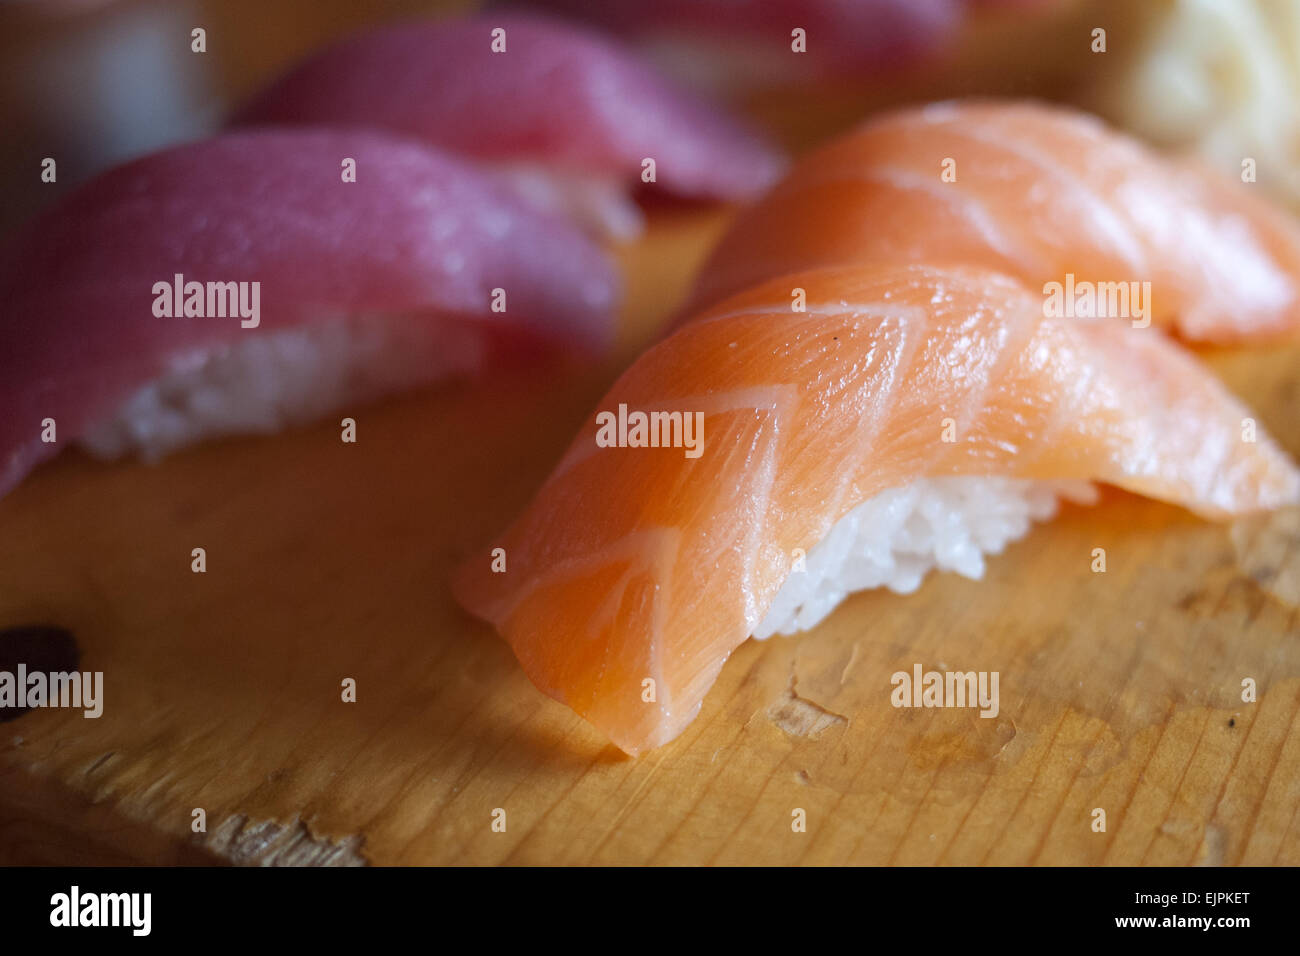 Par souci traditionnel (saumon) nigiri Sushi de thon rouge (maguro nigiri sushi) sur une planche à découper en bois. Banque D'Images